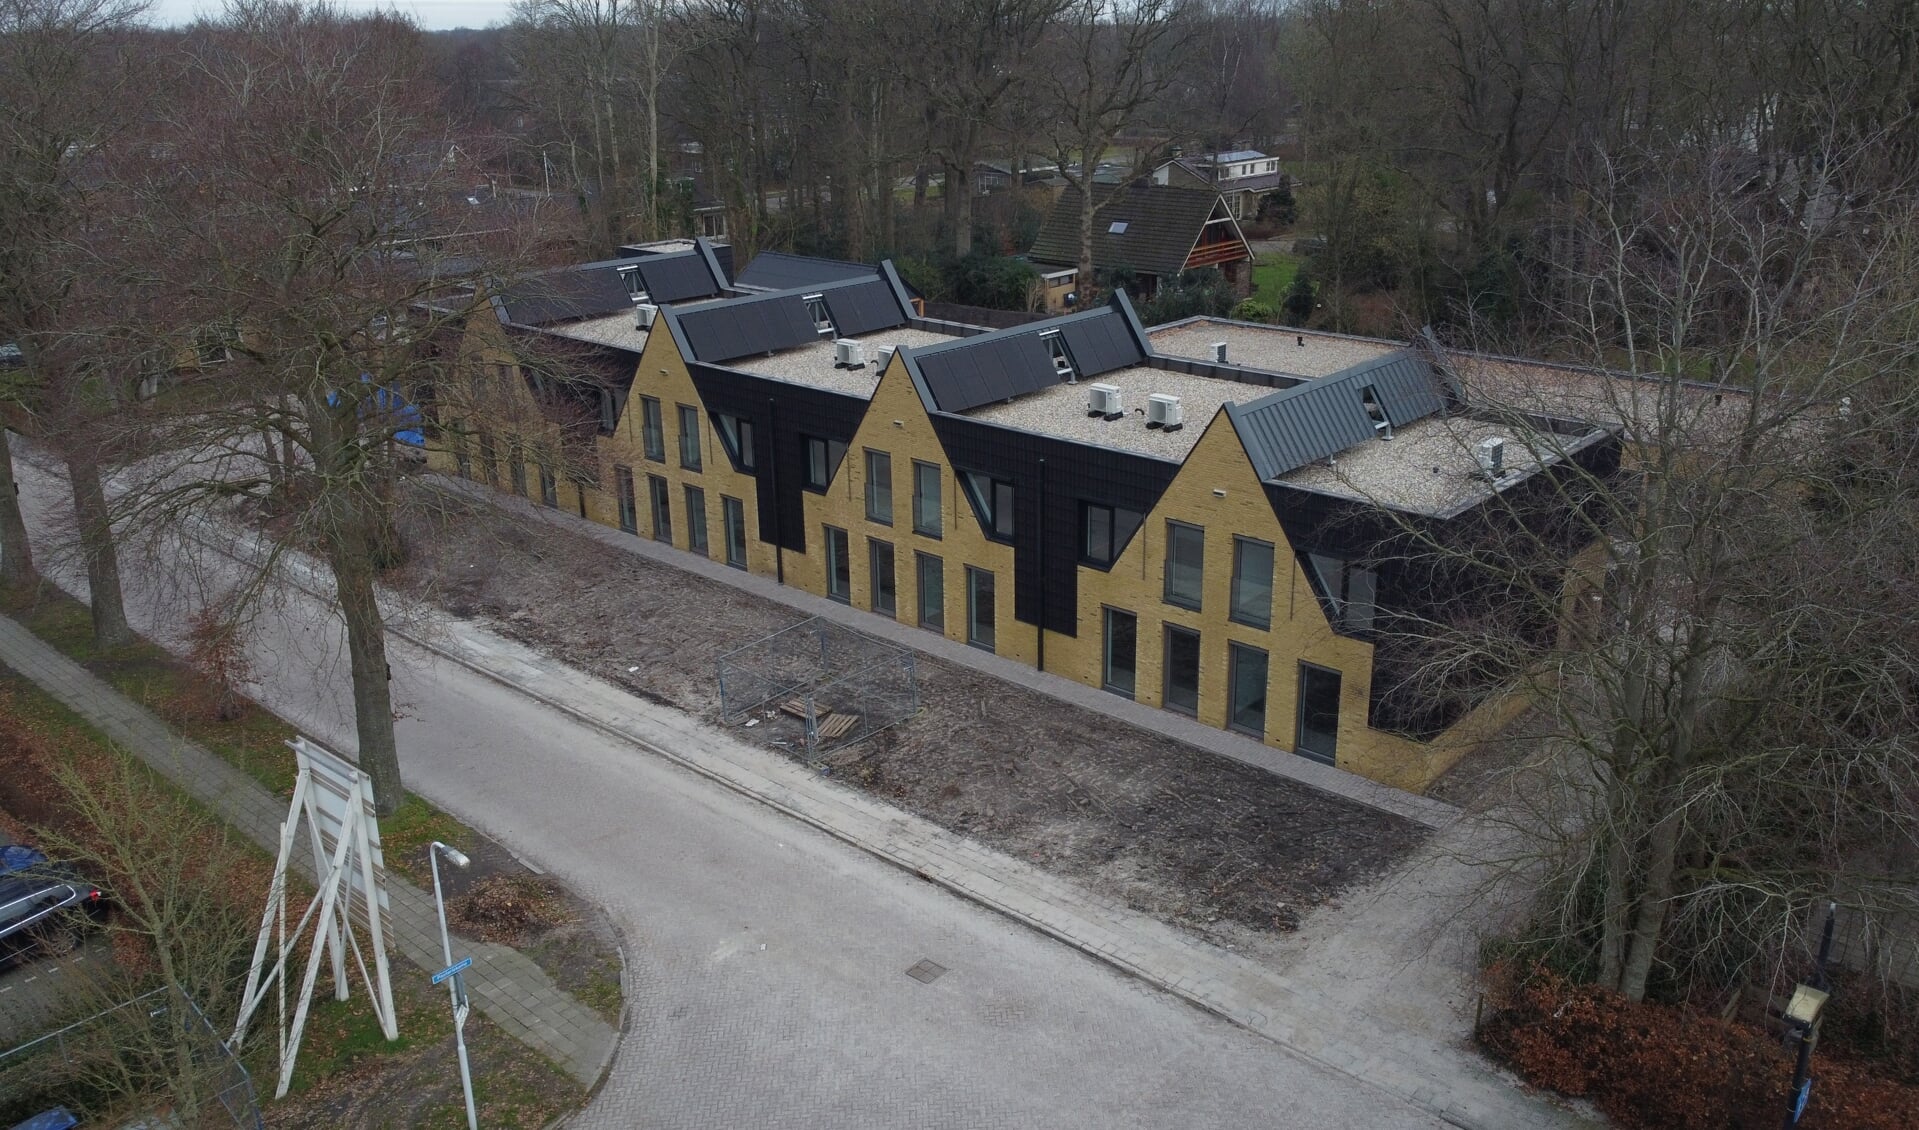 Nieuwbouw aan de J.D. de Vriesstraat in Burgum: 16 studio's, 8 appartementen en een dagbestedingsruimte door Dijkstra Draisma in opdracht van Zorggroep Alliade.